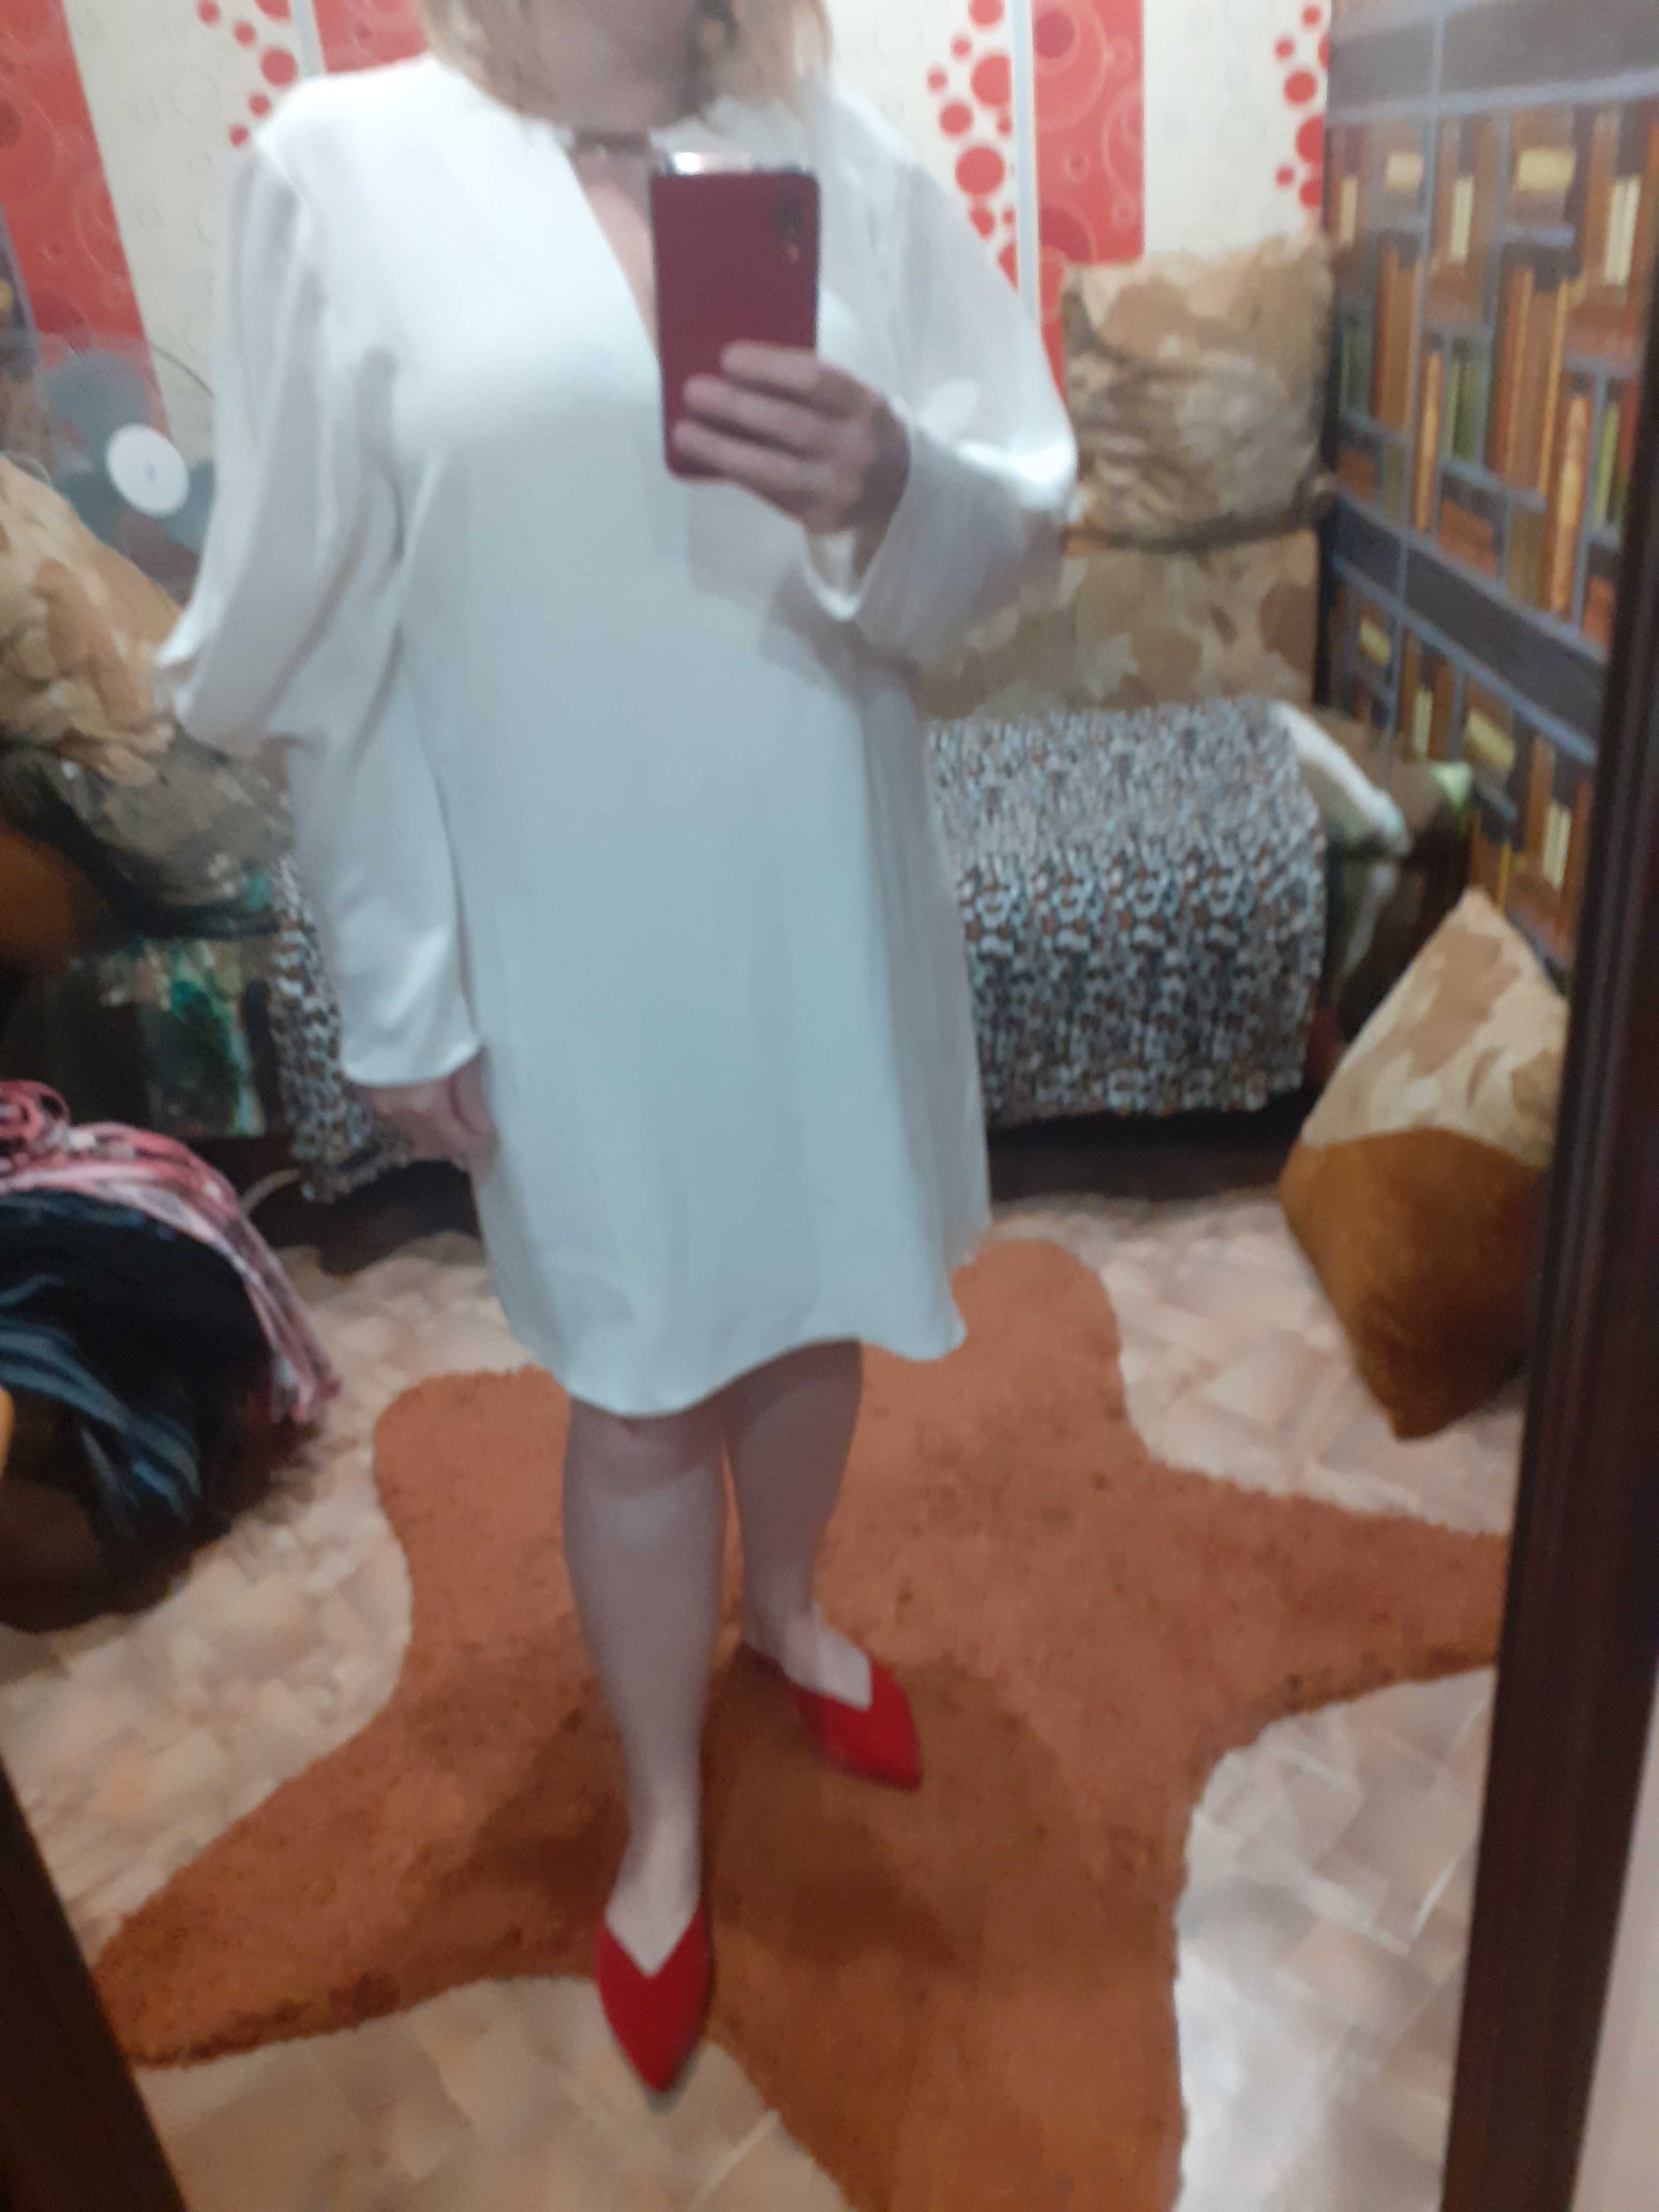 Платье белое нарядное